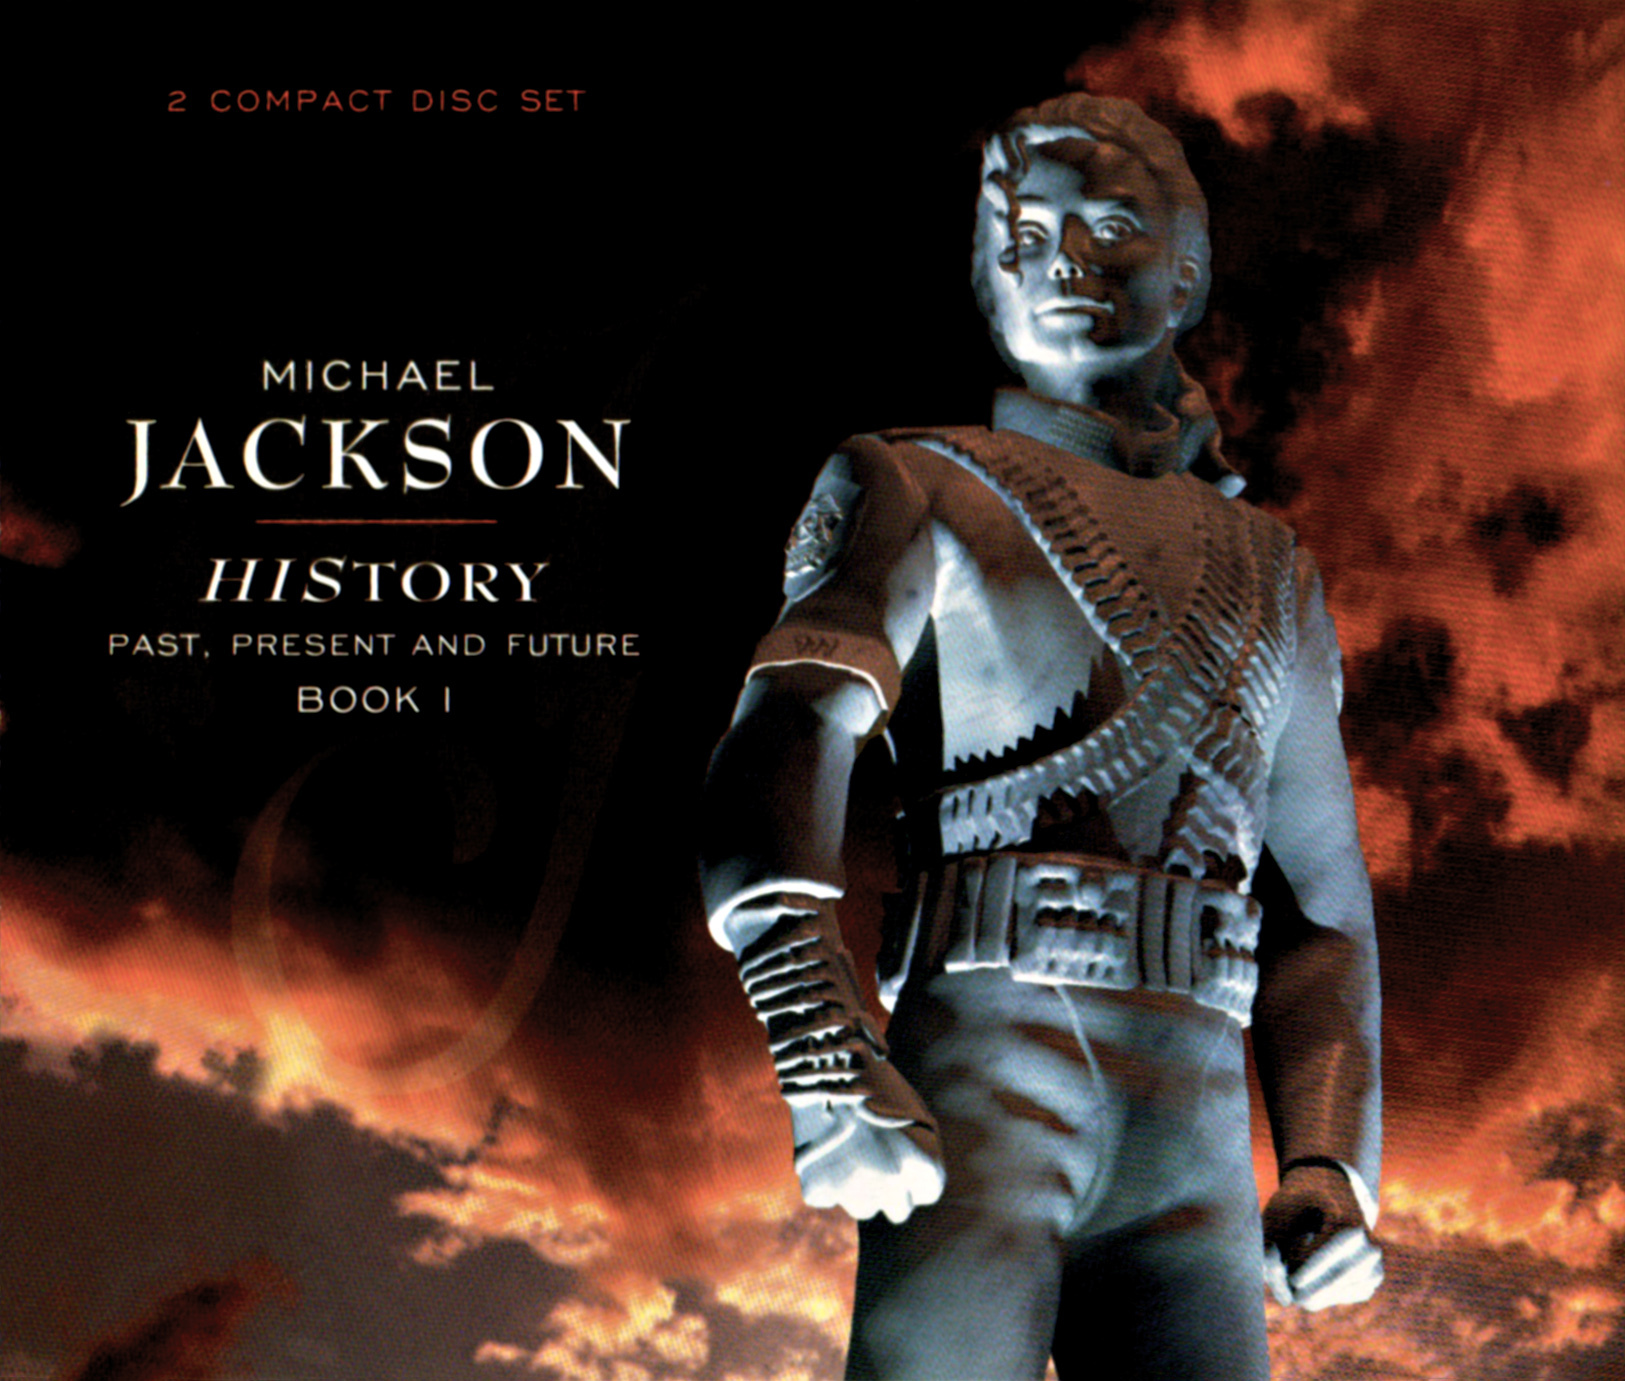 Michael Jackson (マイケル・ジャクソン) 『HIStory: Past, Present and Future, Book I (ヒストリー パスト、プレズント・アンド・フューチャー ブック1)』(1995年6月16日発売) 高画質CDジャケット画像